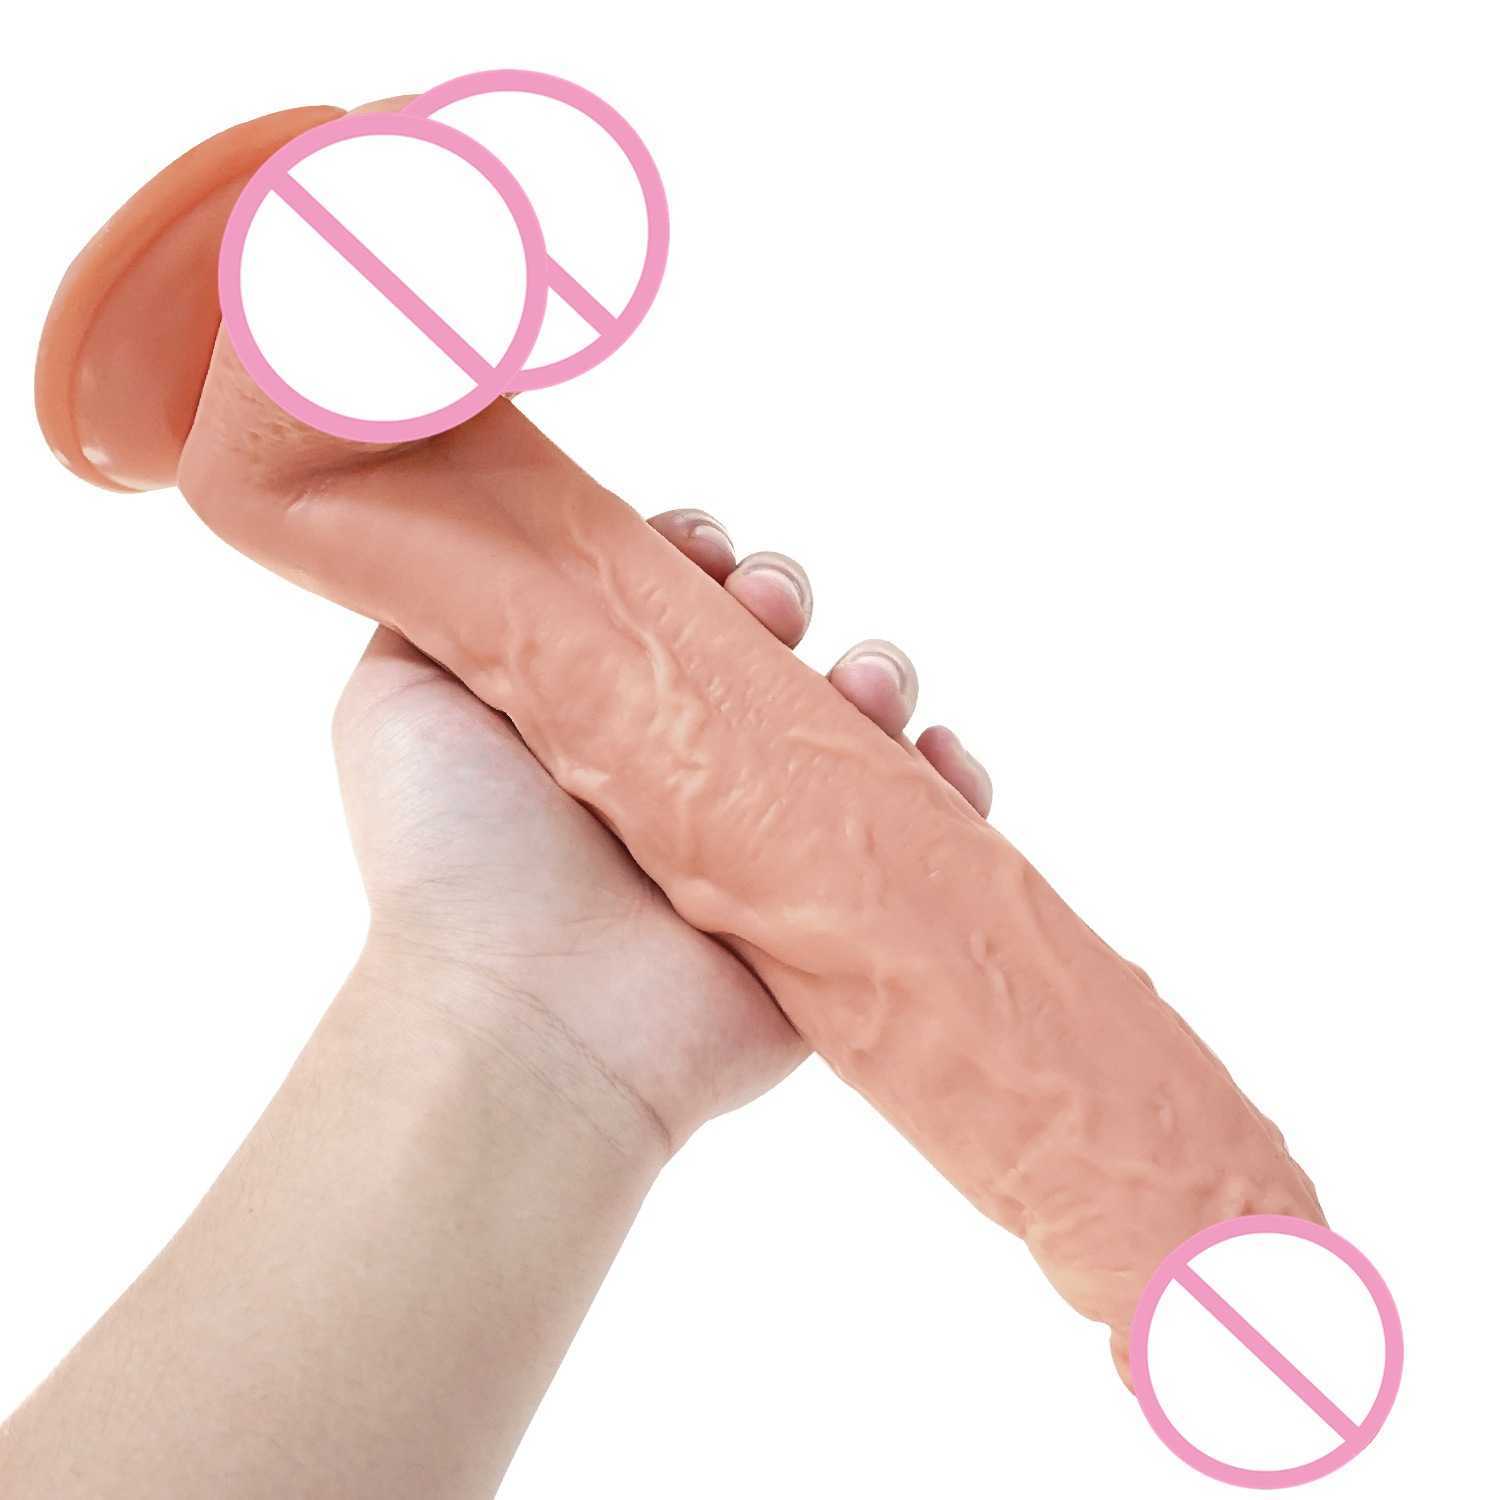 Moos-Saugnapf-Simulation, weiblicher G-Punkt-Vibrator, flirtend, Sexprodukte für Erwachsene. 75 % Rabatt auf Online-Verkäufe